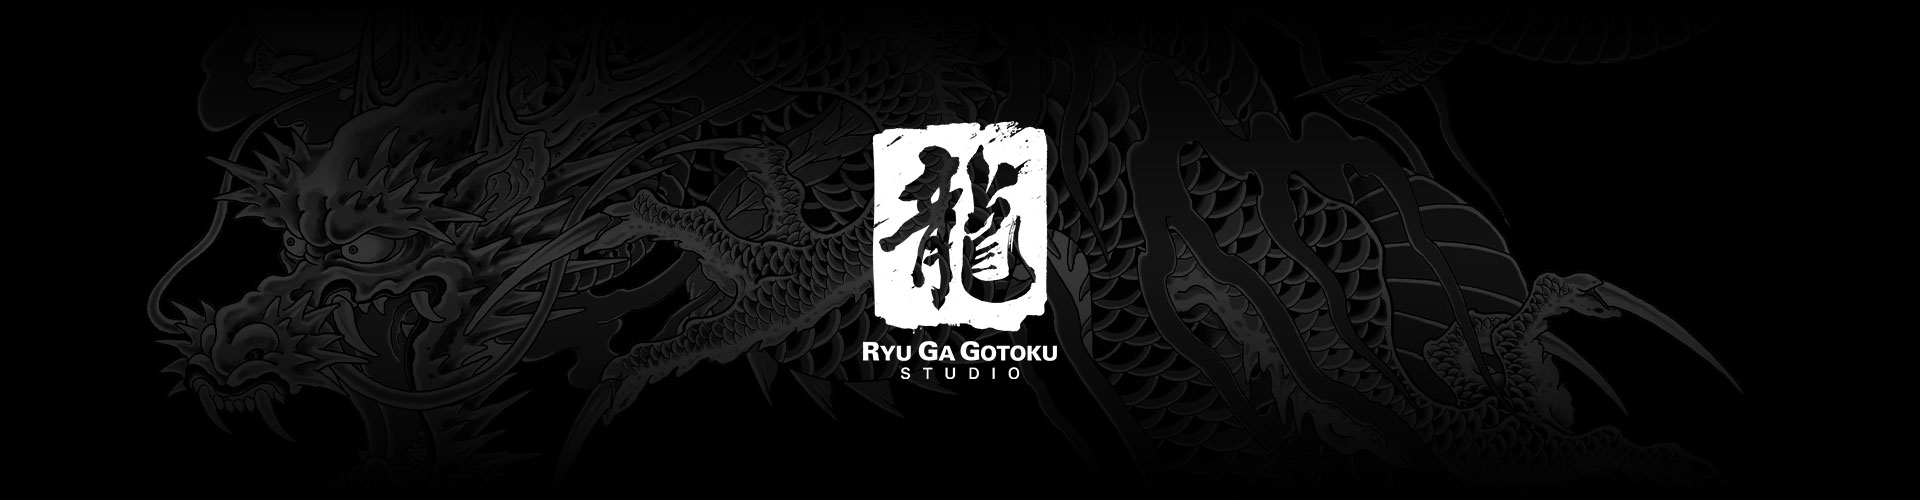 Ryu Ga Gotoku Studio logo with a grey dragon tattoo background.